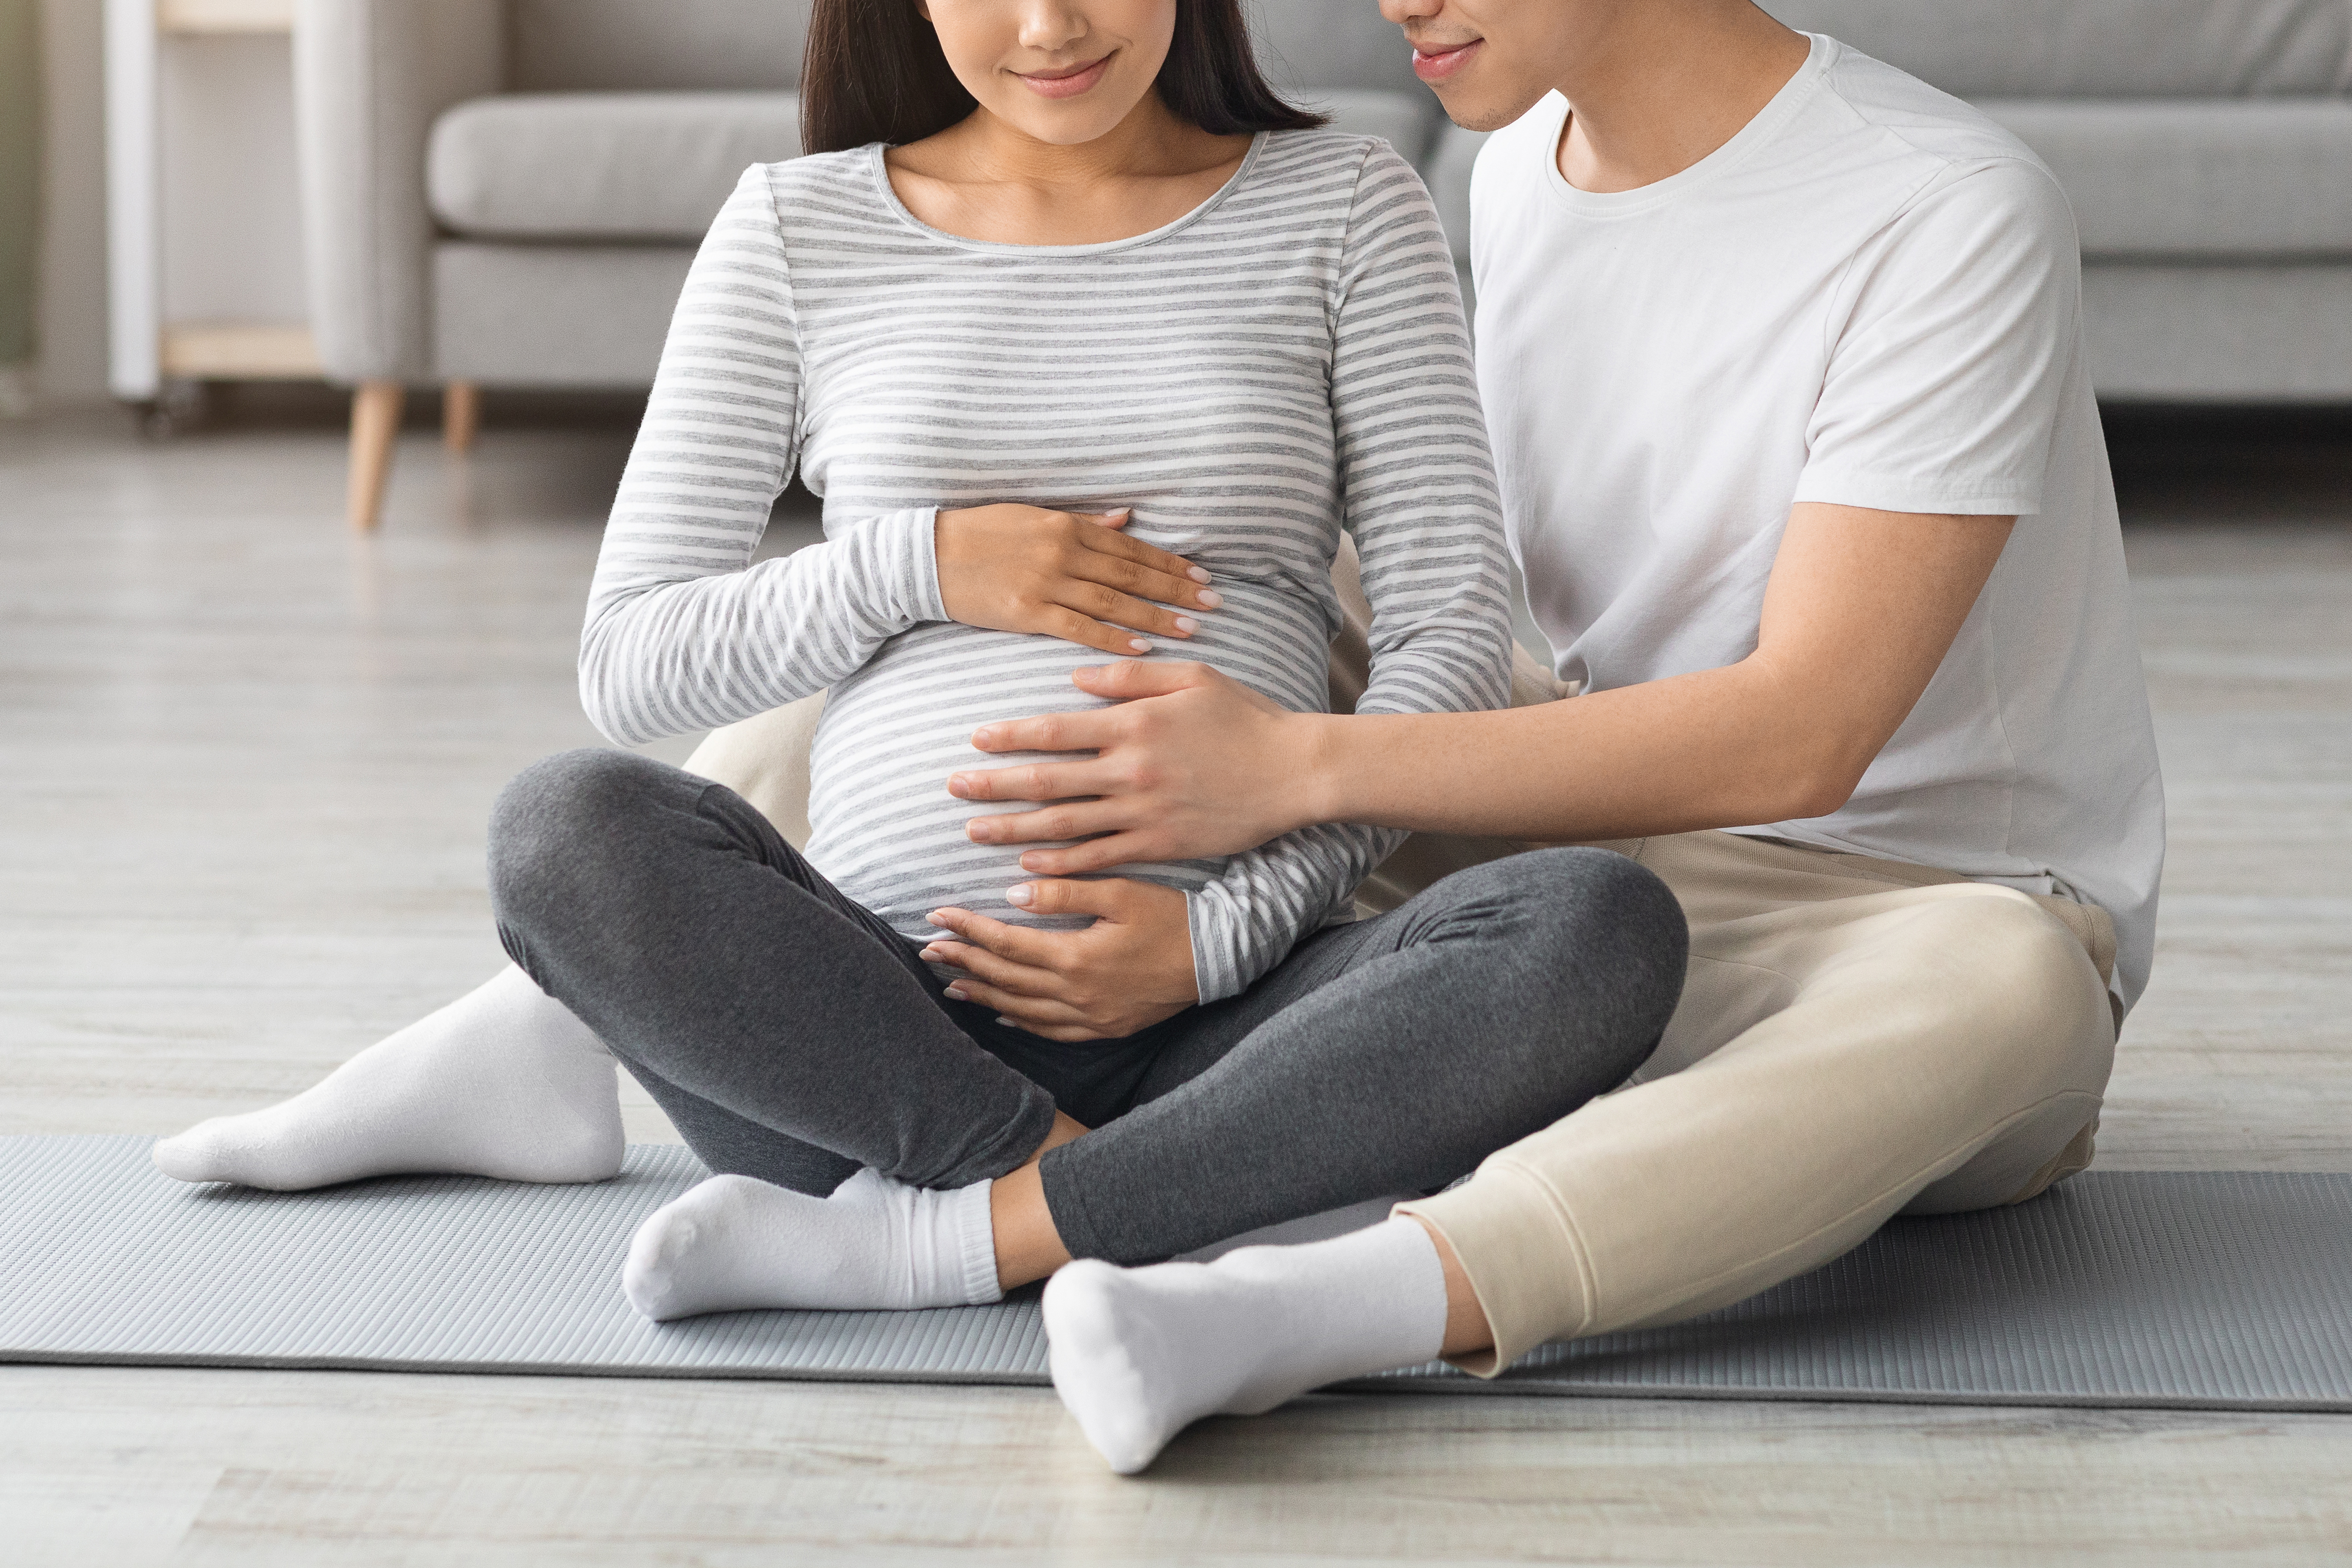 Homme assis avec sa femme enceinte sur un tapis de yoga | Source : Shutterstock